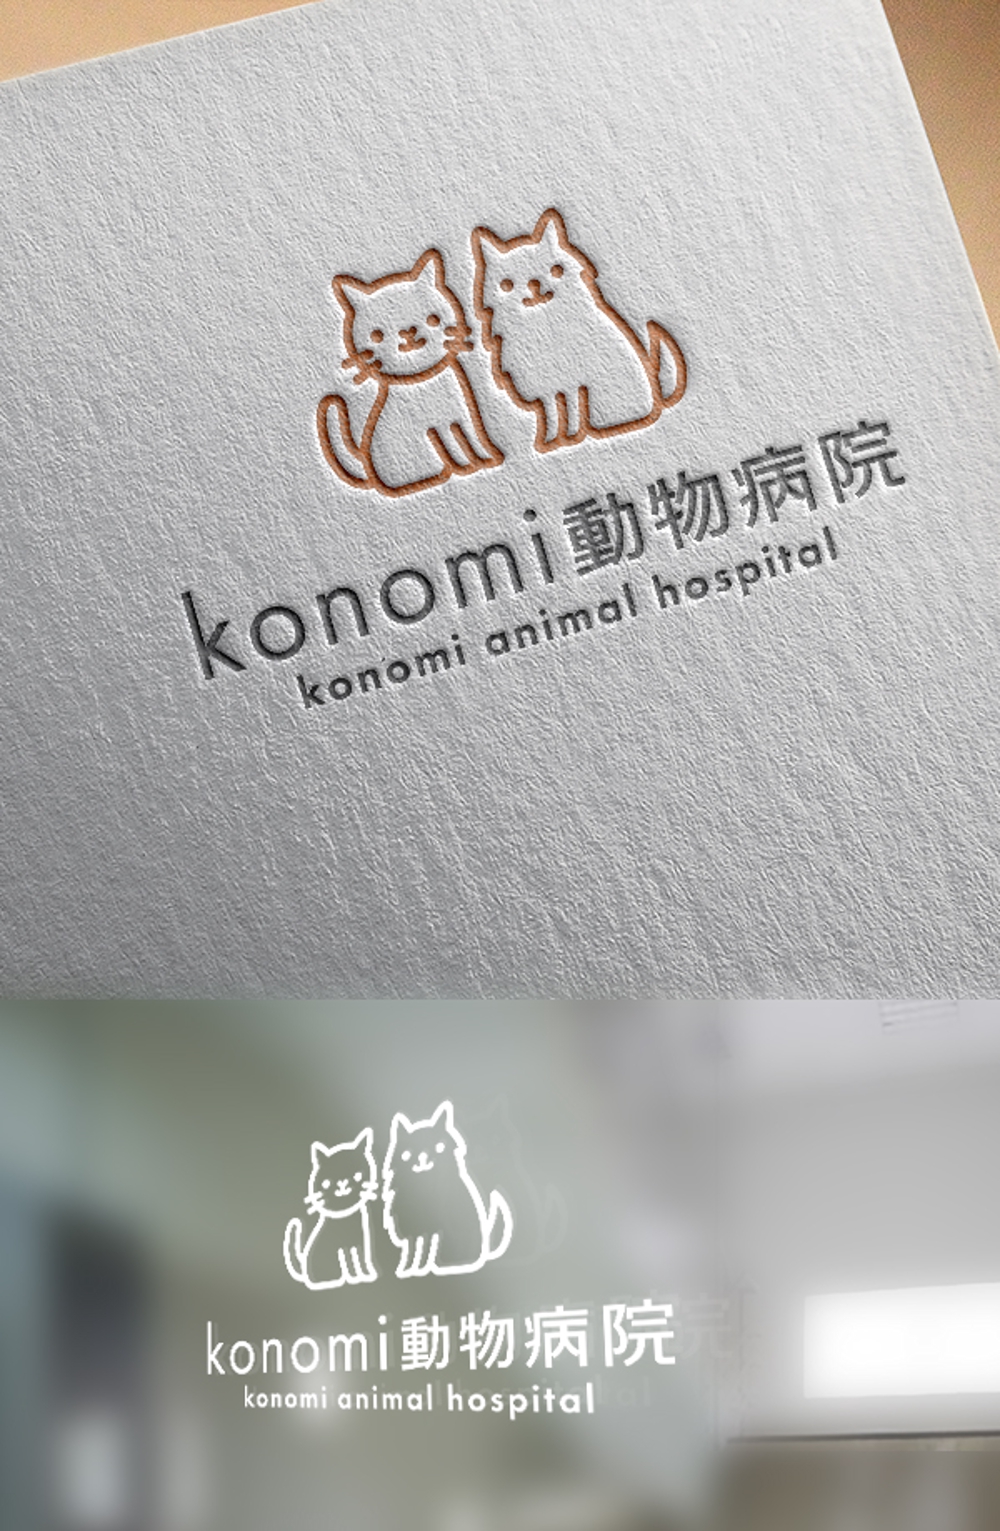 動物病院のロゴ/konomi動物病院